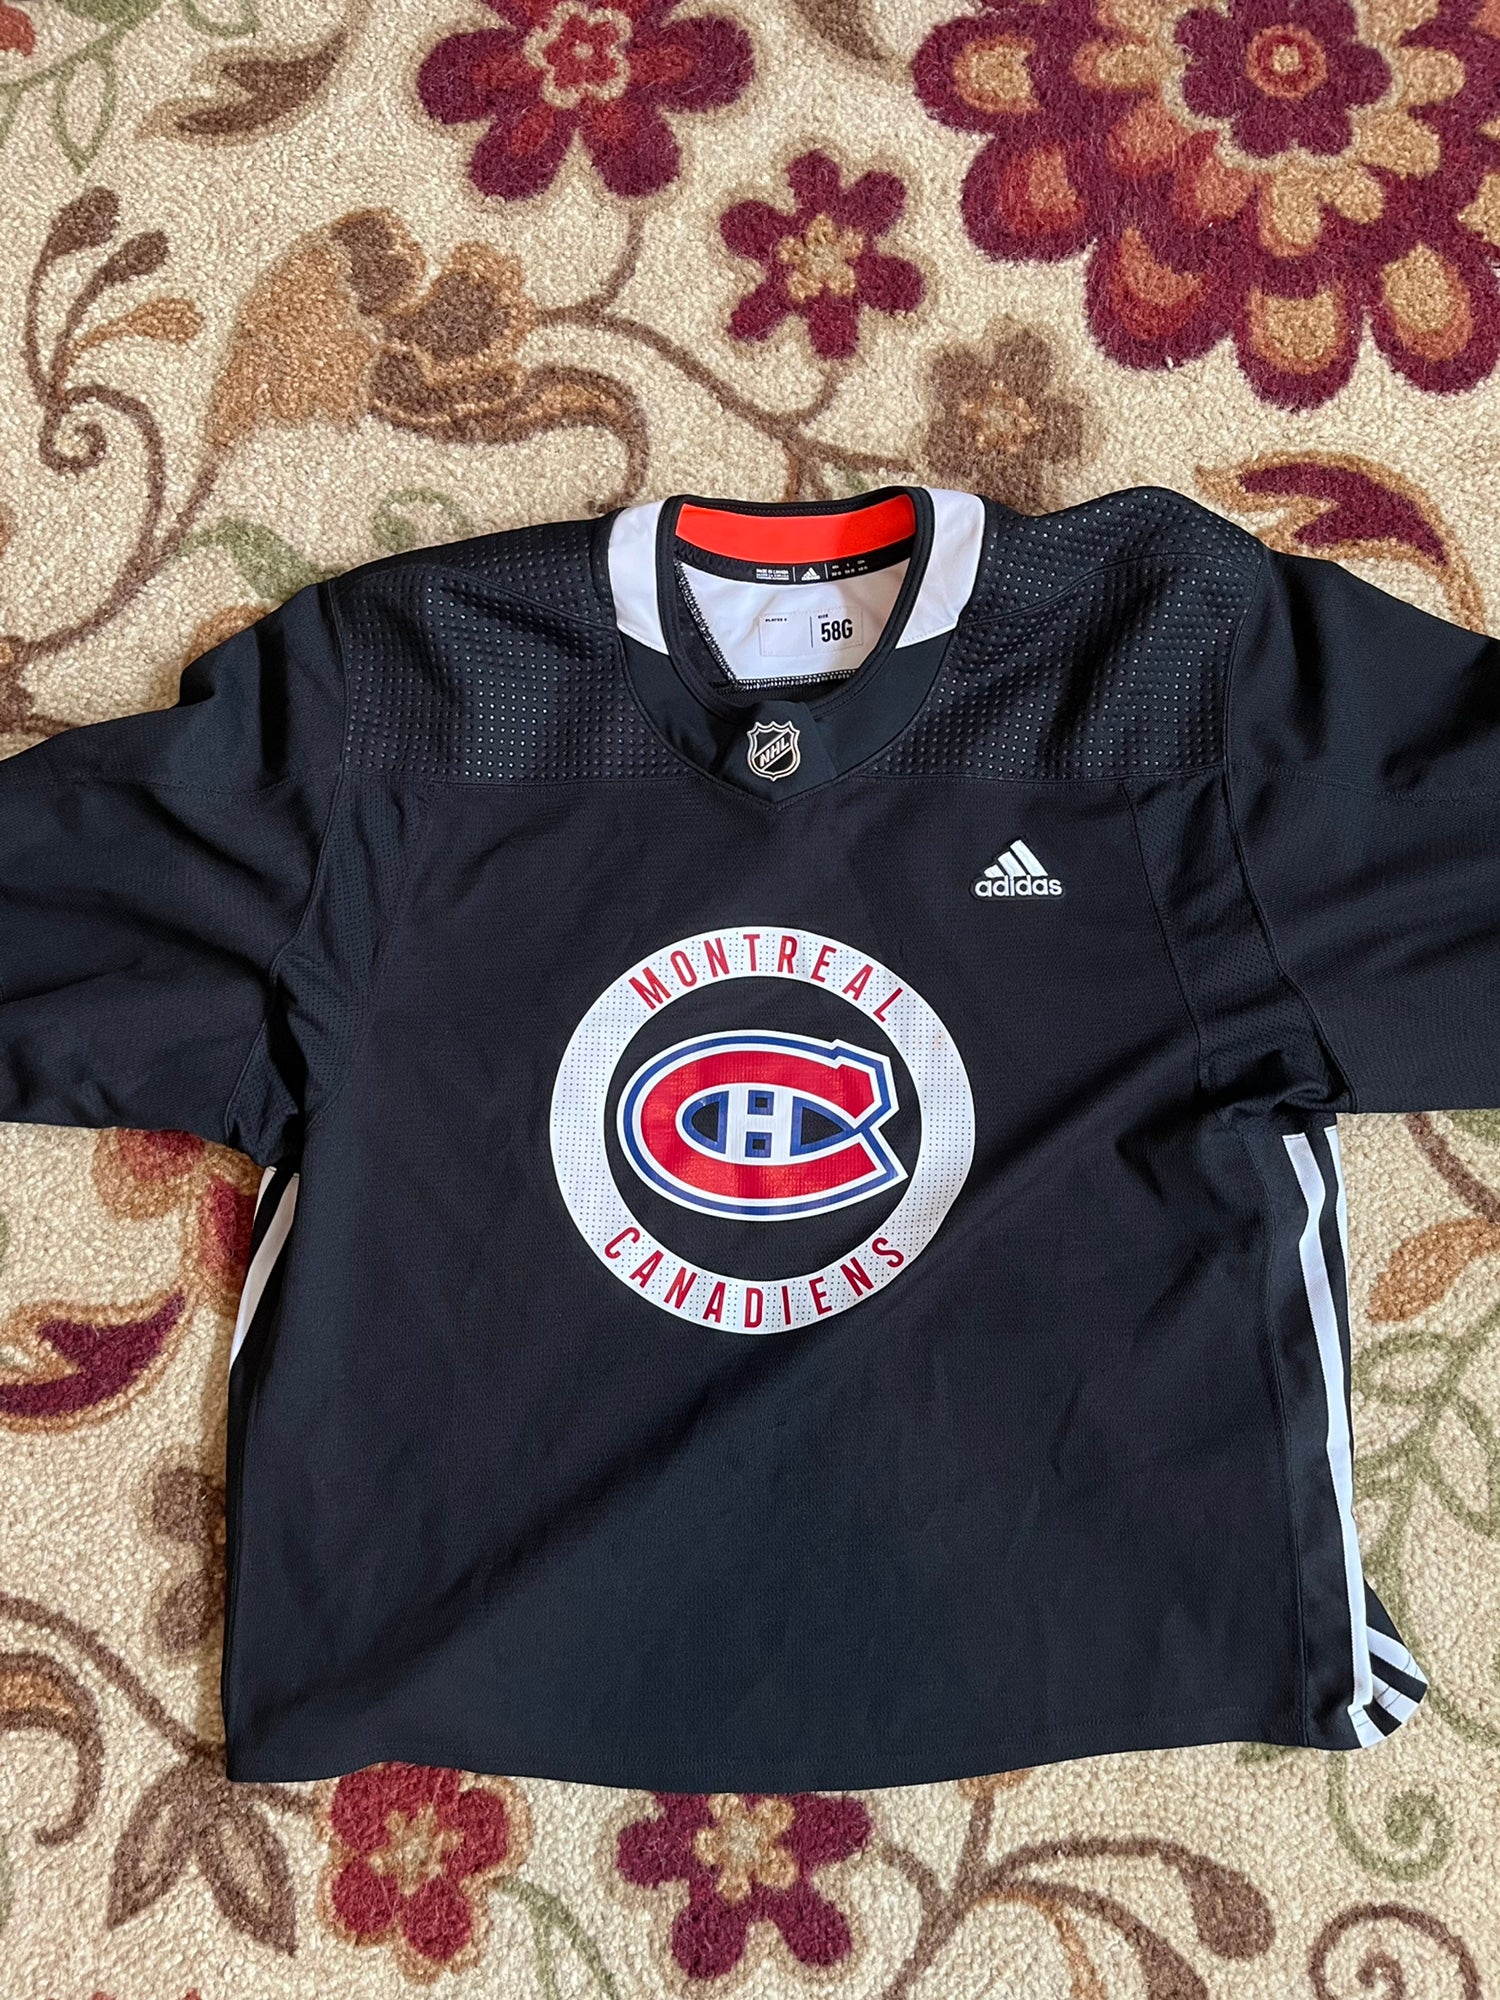 Montreal Canadiens Gear, Canadiens Jerseys, Montreal Canadiens Clothing,  Canadiens Pro Shop, Canadiens Hockey Apparel